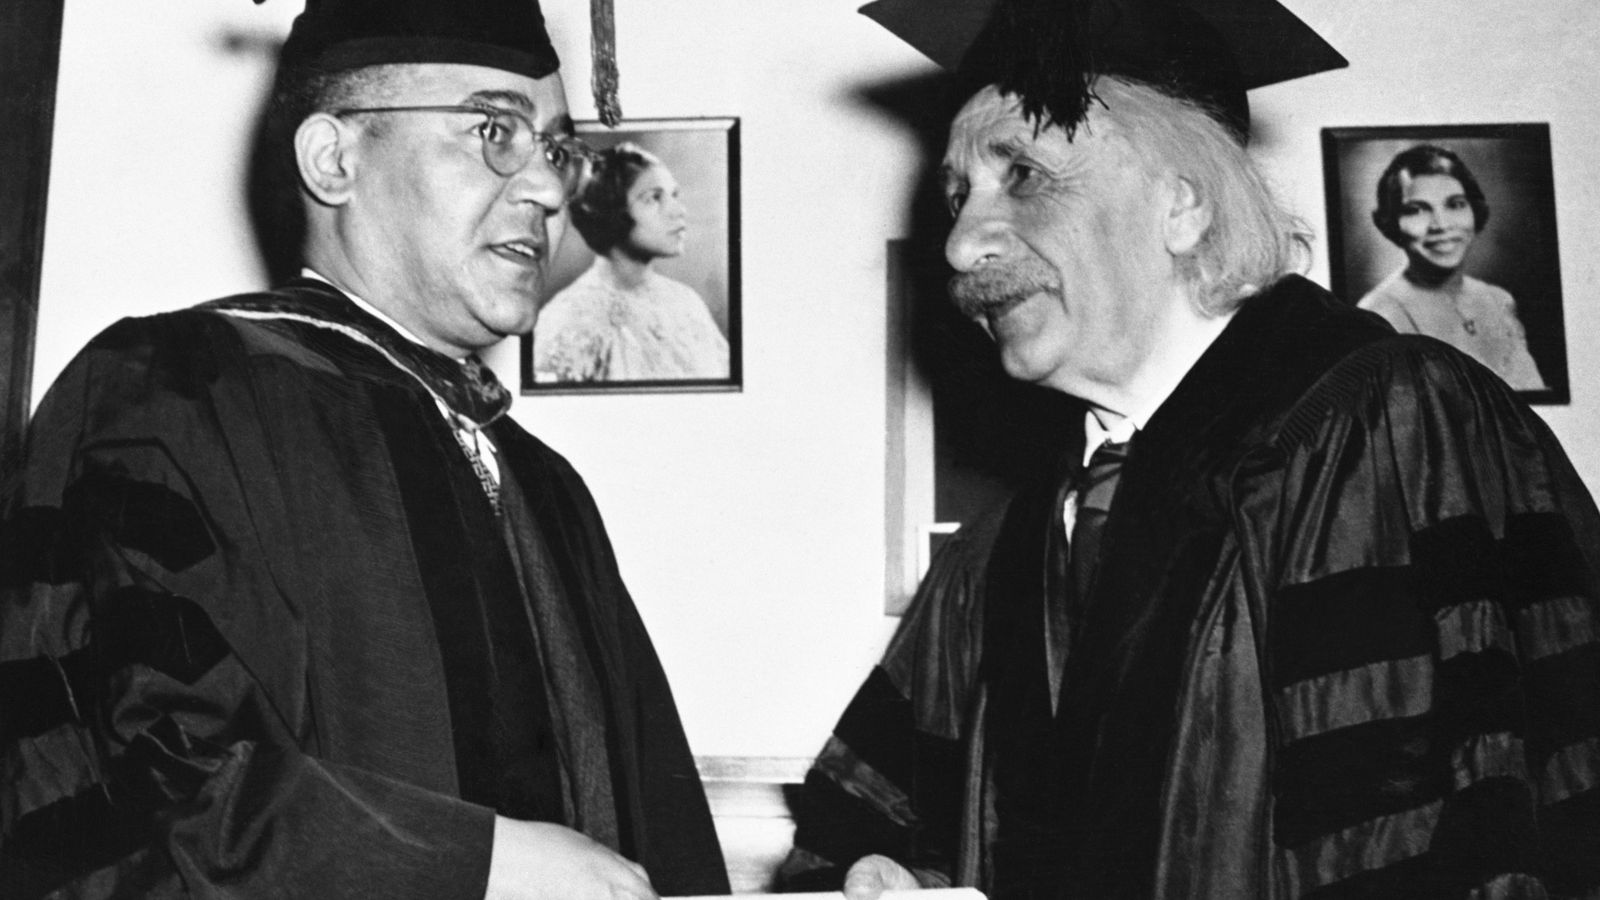 Foto: Einstein recibe su diploma honorífico de manos de Mann Bond, presidente de la Universidad Lincoln